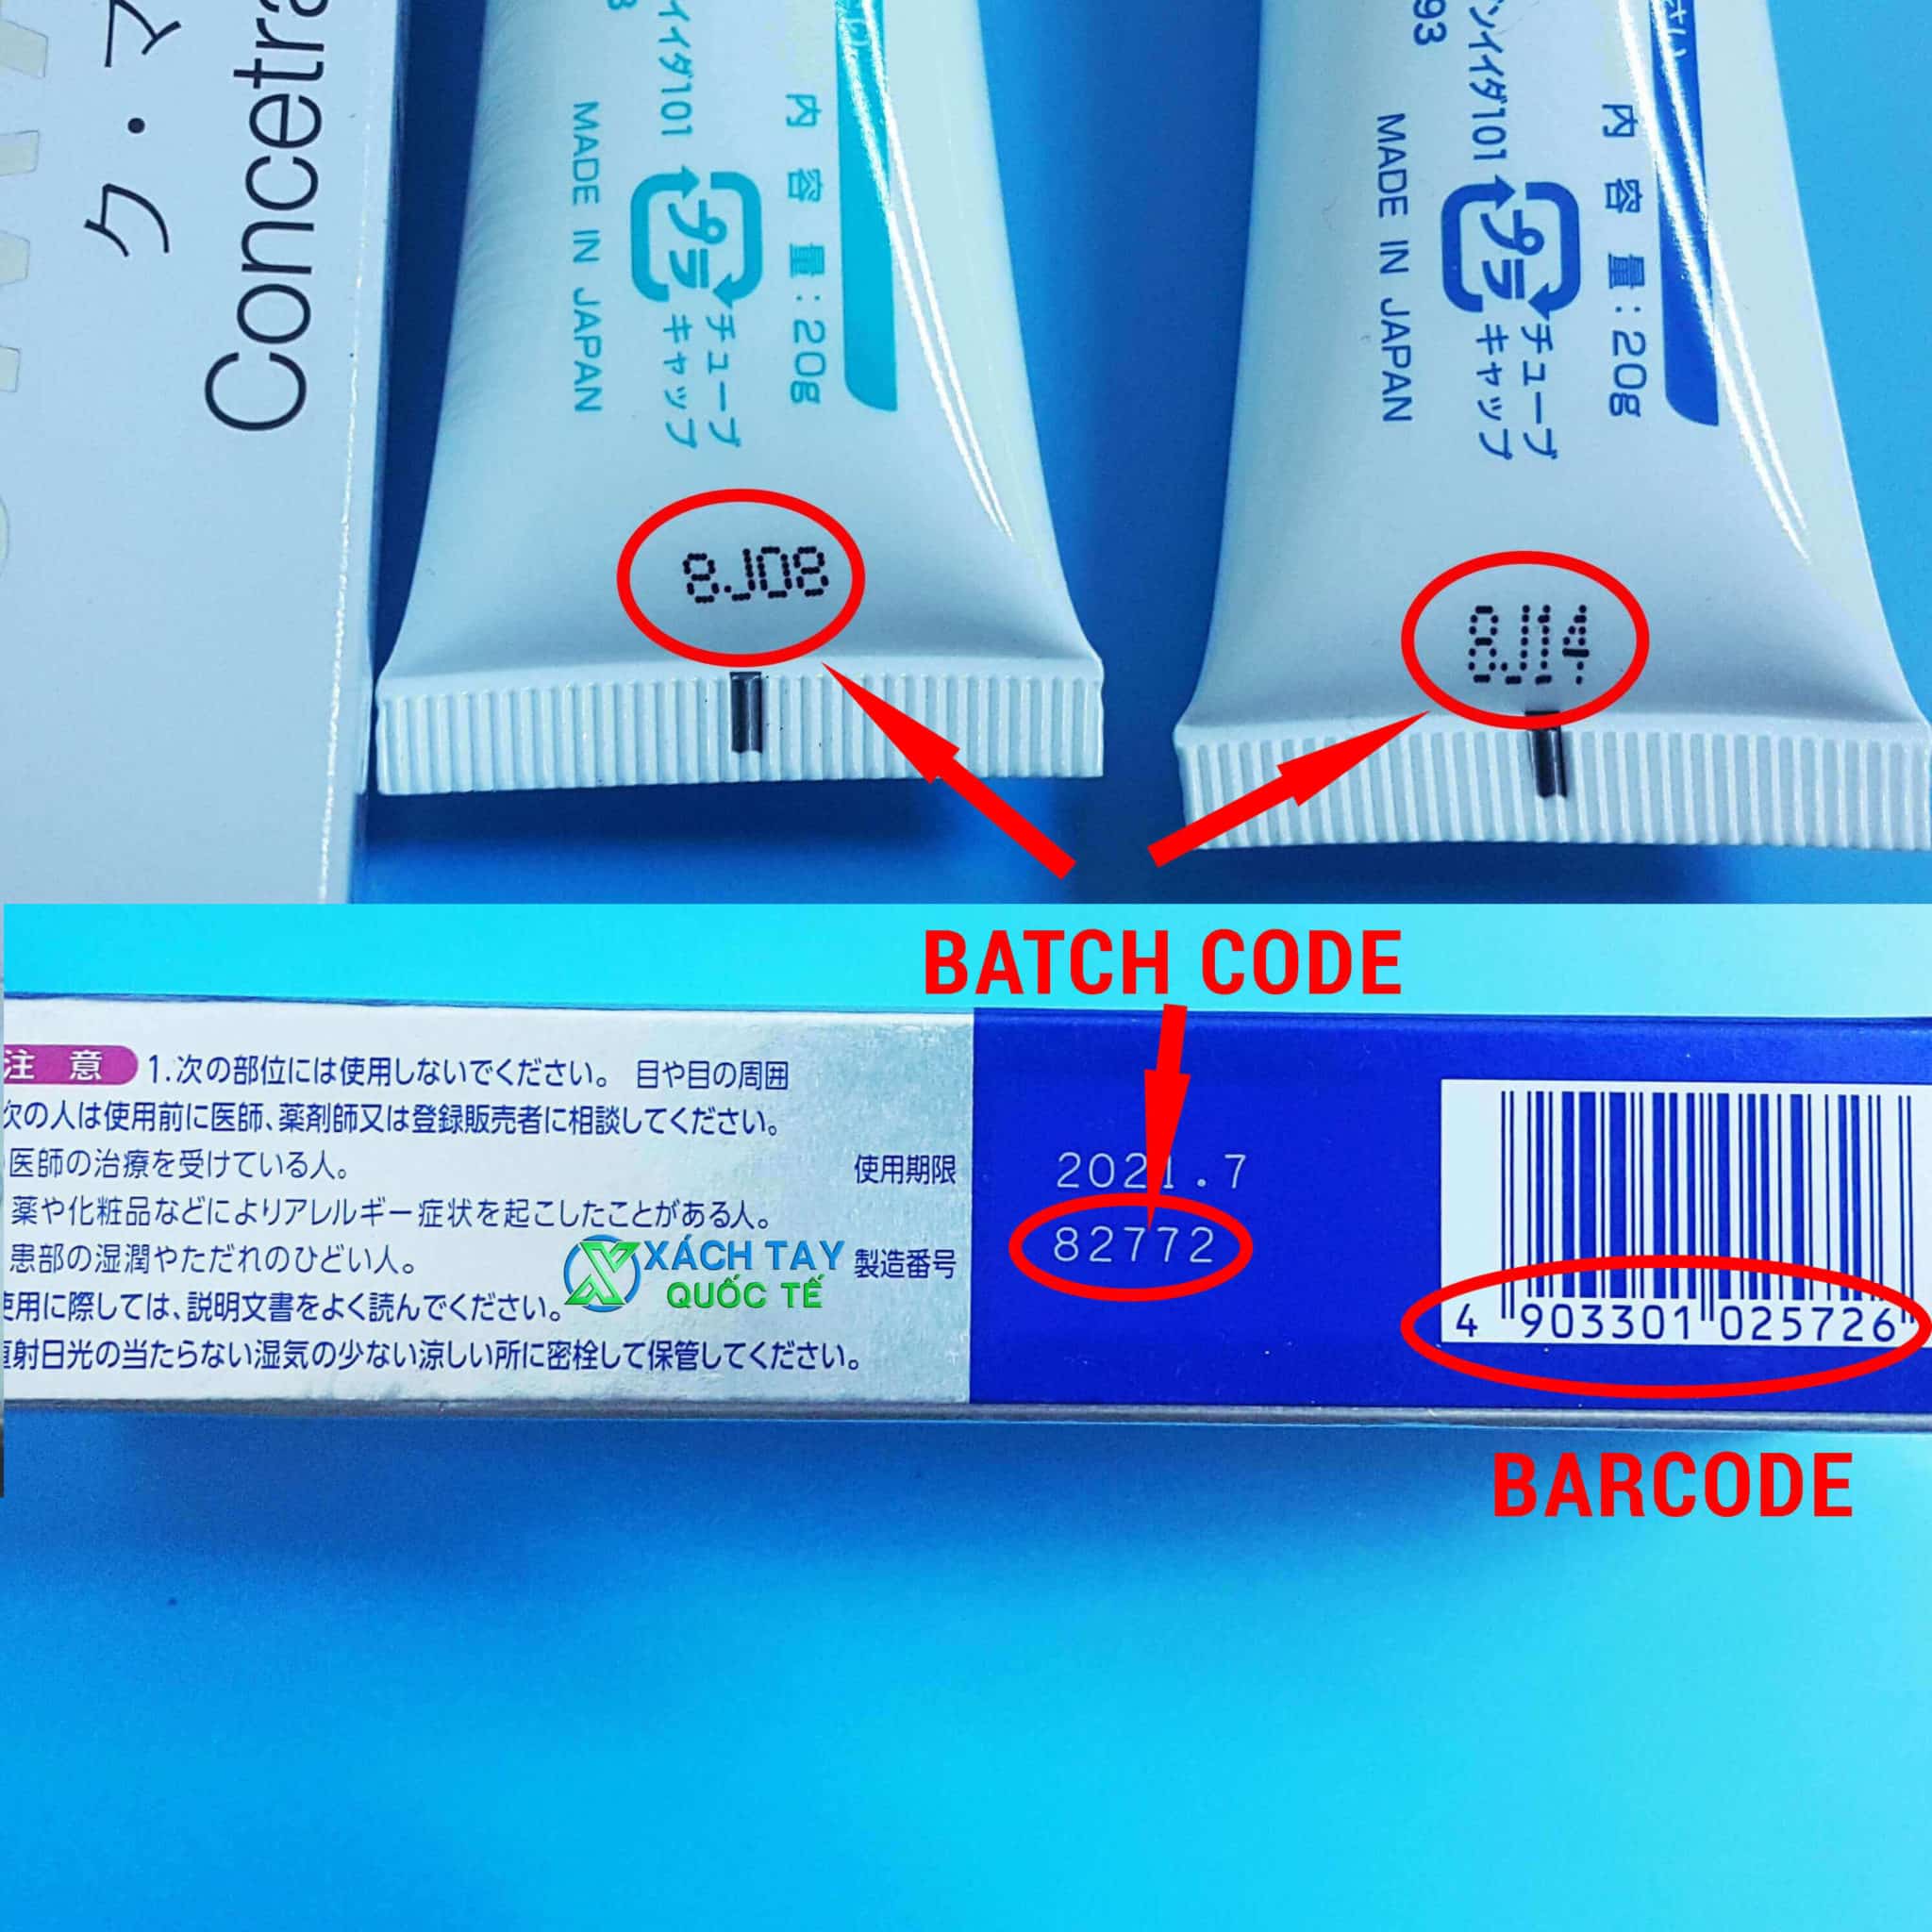 Barcode và Batch Code mỹ phẩm Nhật Bản